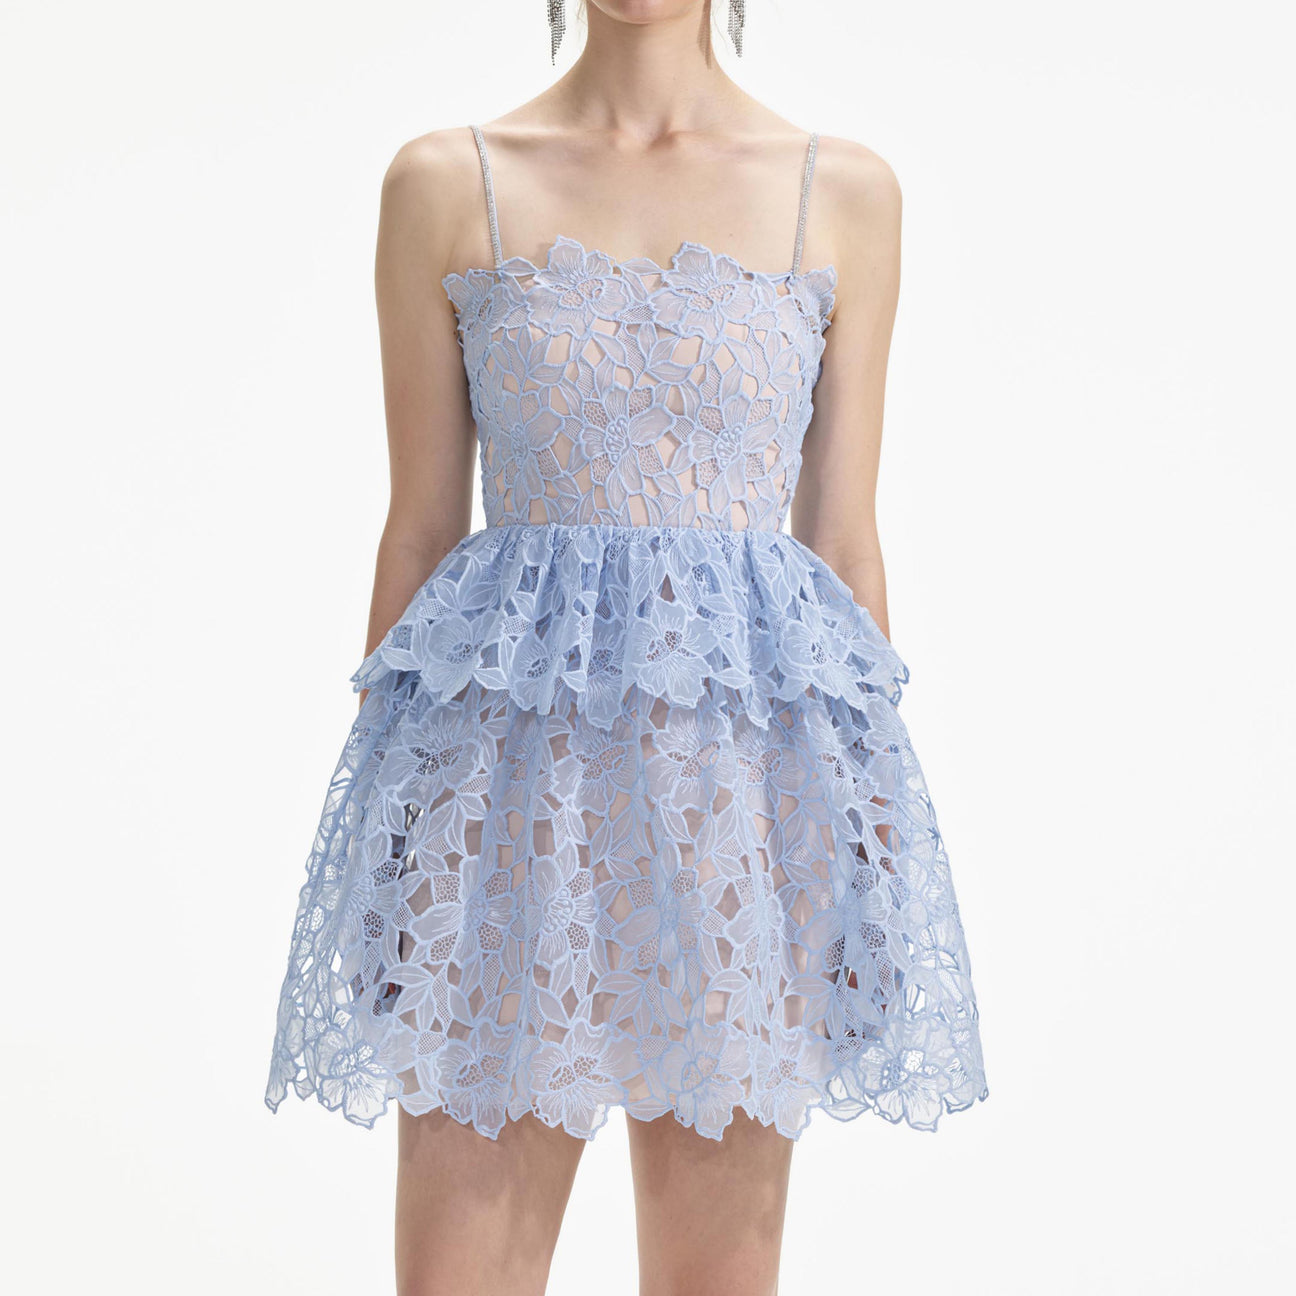 SP Blue Organza Lace Mini & Midi Dress